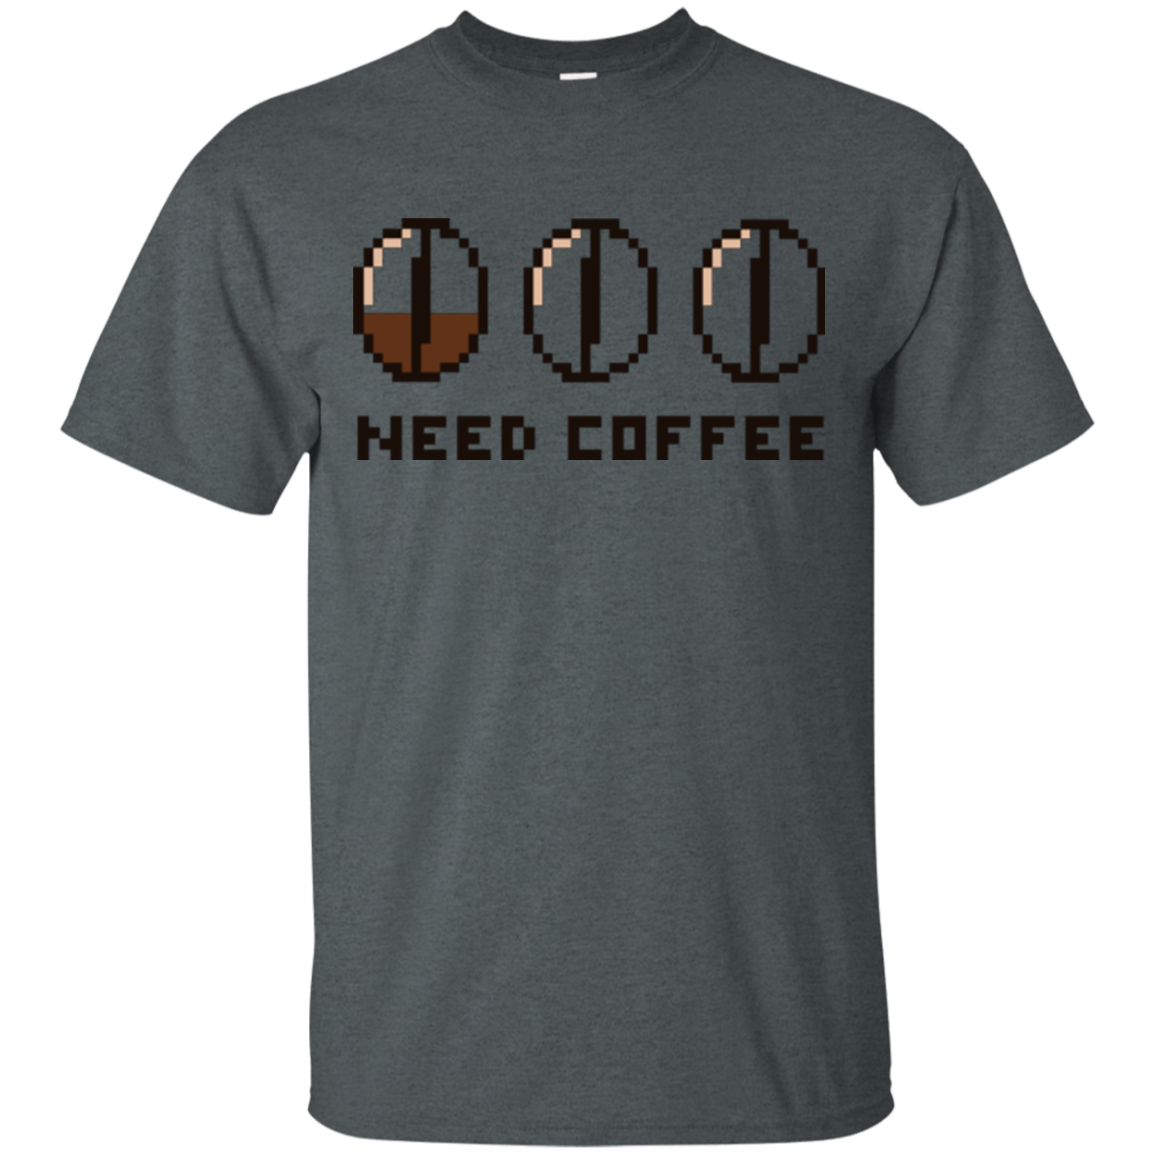 Need Coffee T-Shirt